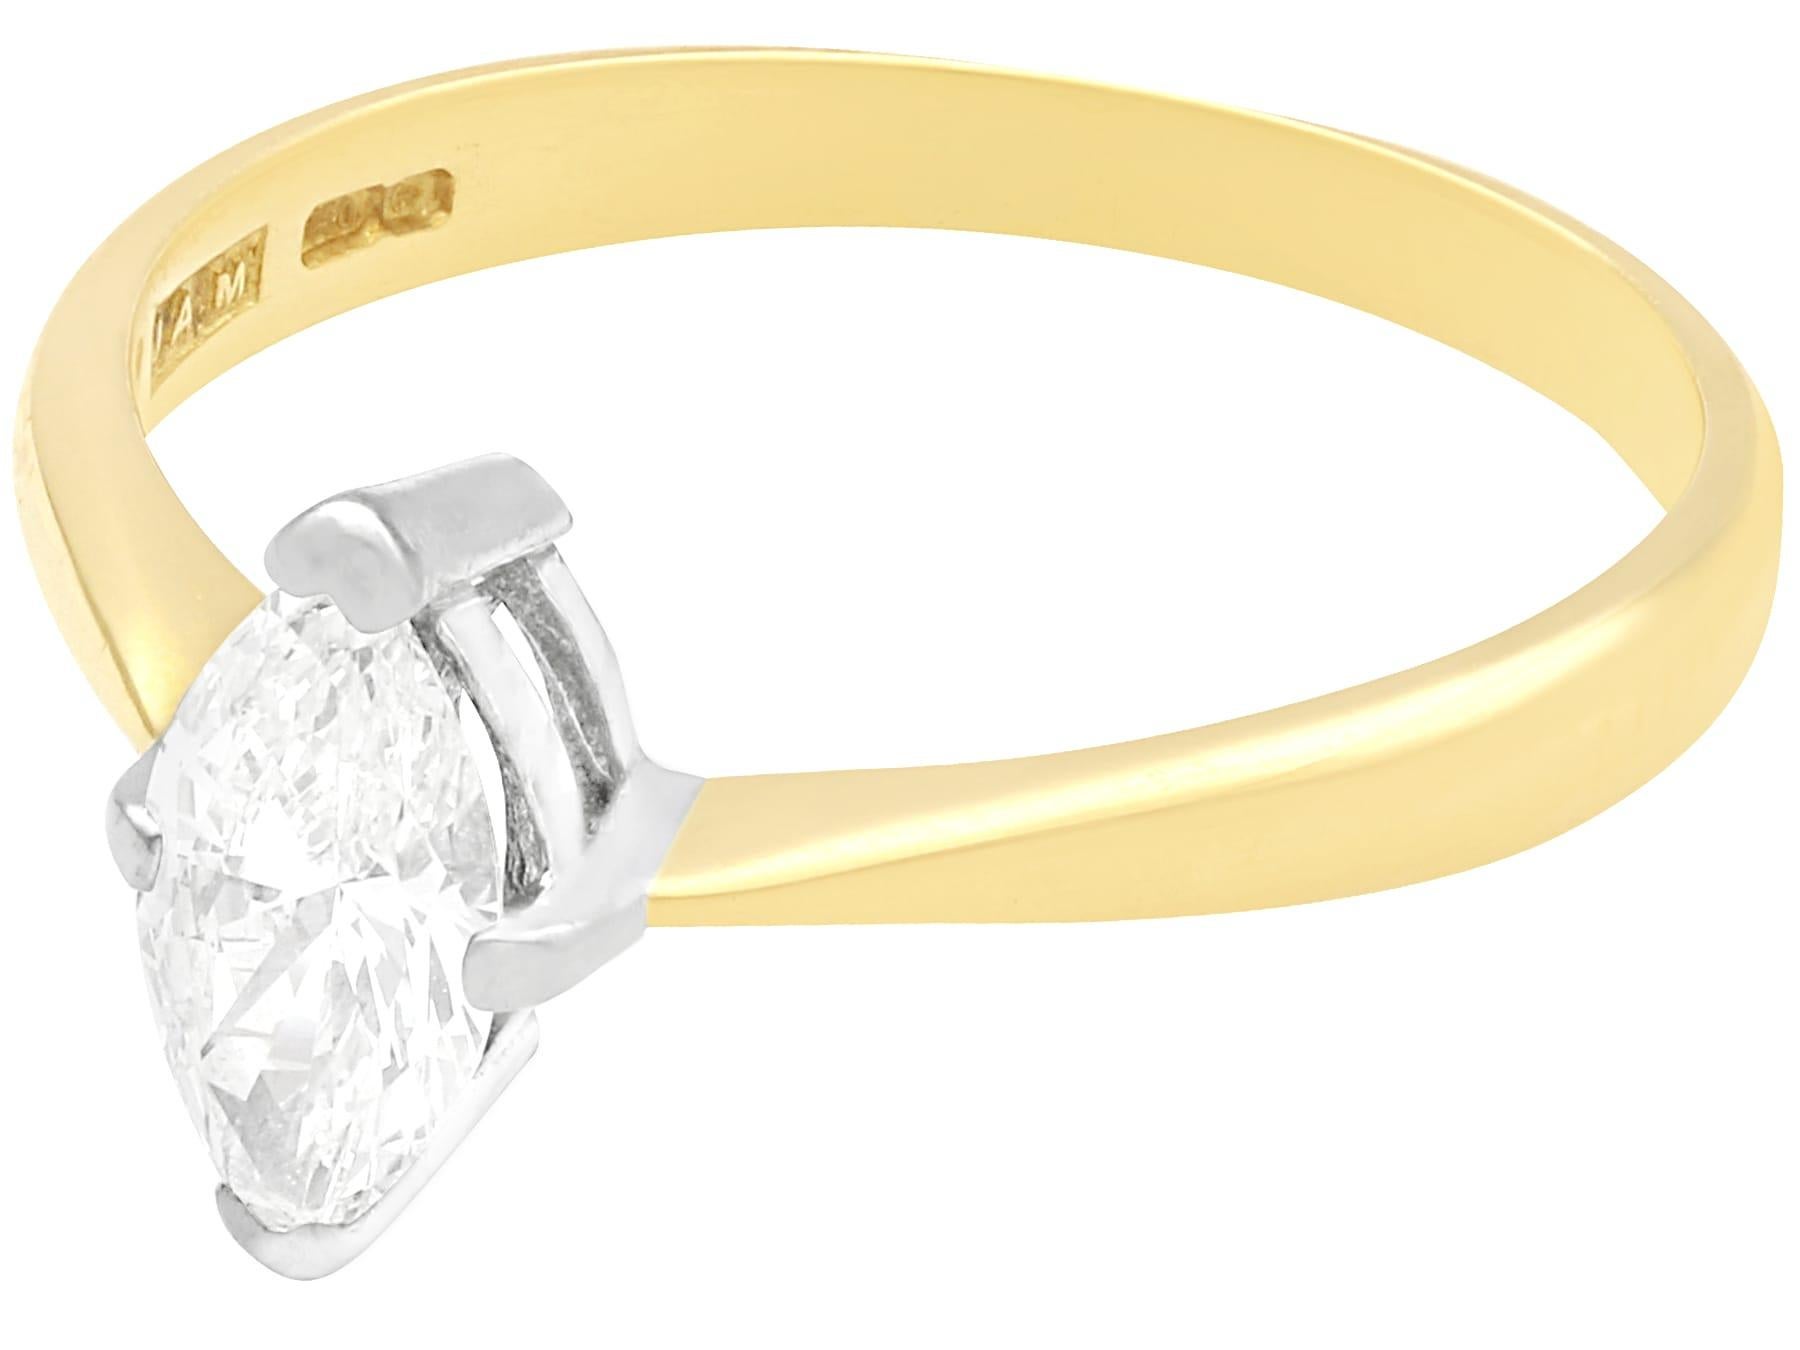 Une belle et impressionnante bague solitaire vintage en or jaune 18 carats, or blanc 18 carats, sertie d'un diamant de 0,56 carat, qui fait partie de nos collections de bijoux en diamant et de bijoux de succession.

Cette impressionnante bague